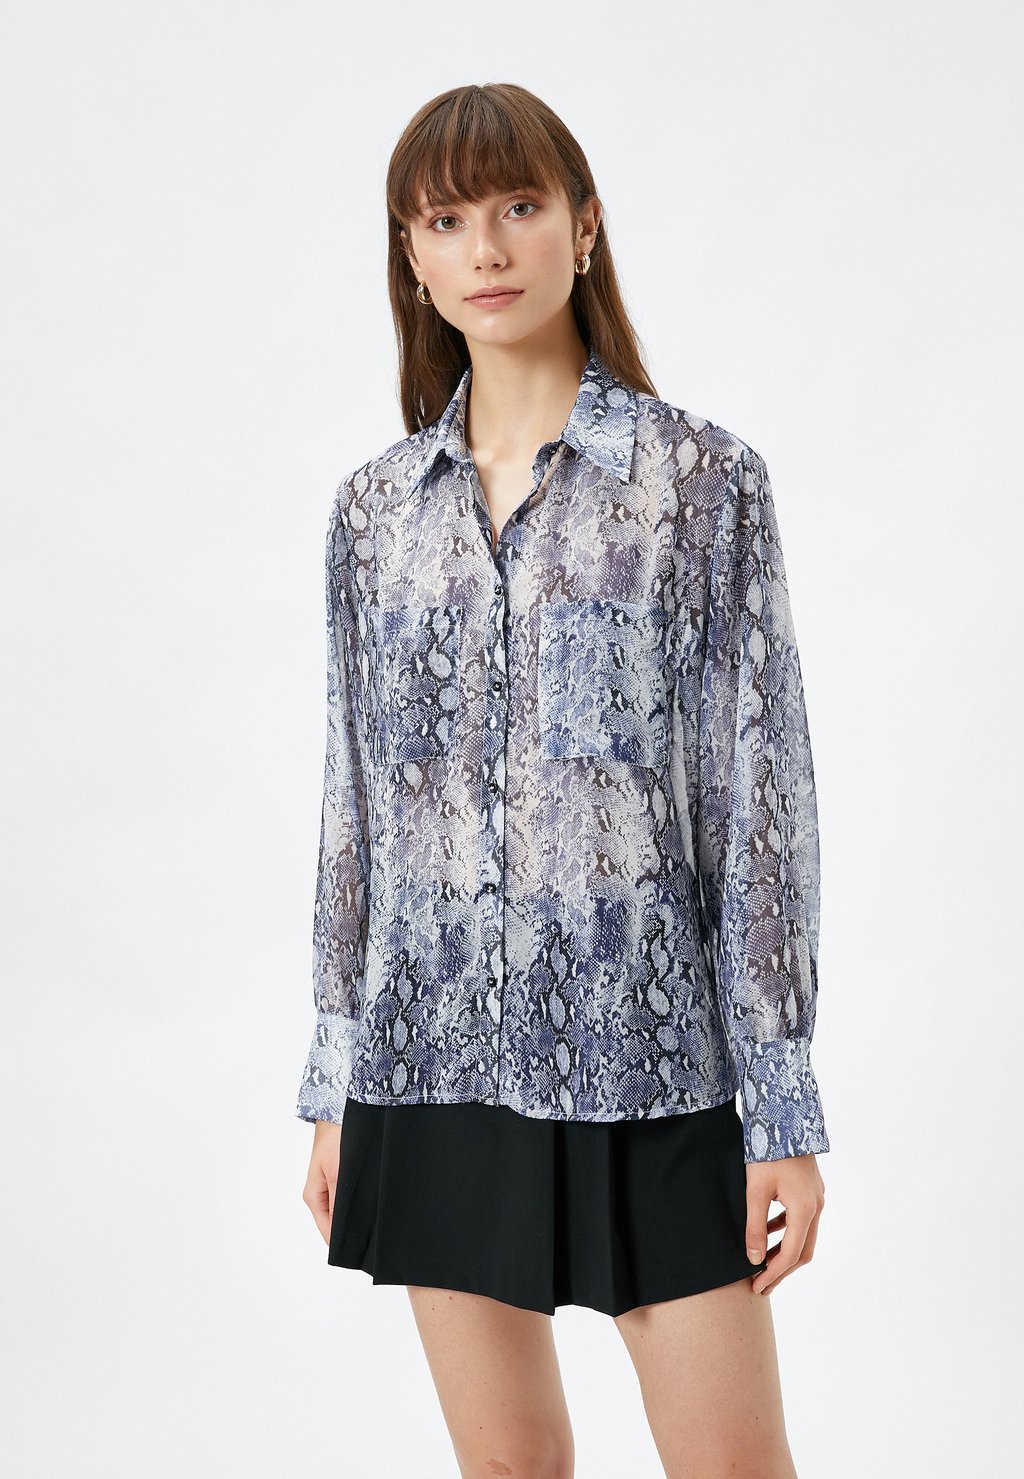 Рубашка LONG SLEEVE POCKET DETAIL Koton, вереск темно-синий чиносы stretch esprit collection вереск темно синий